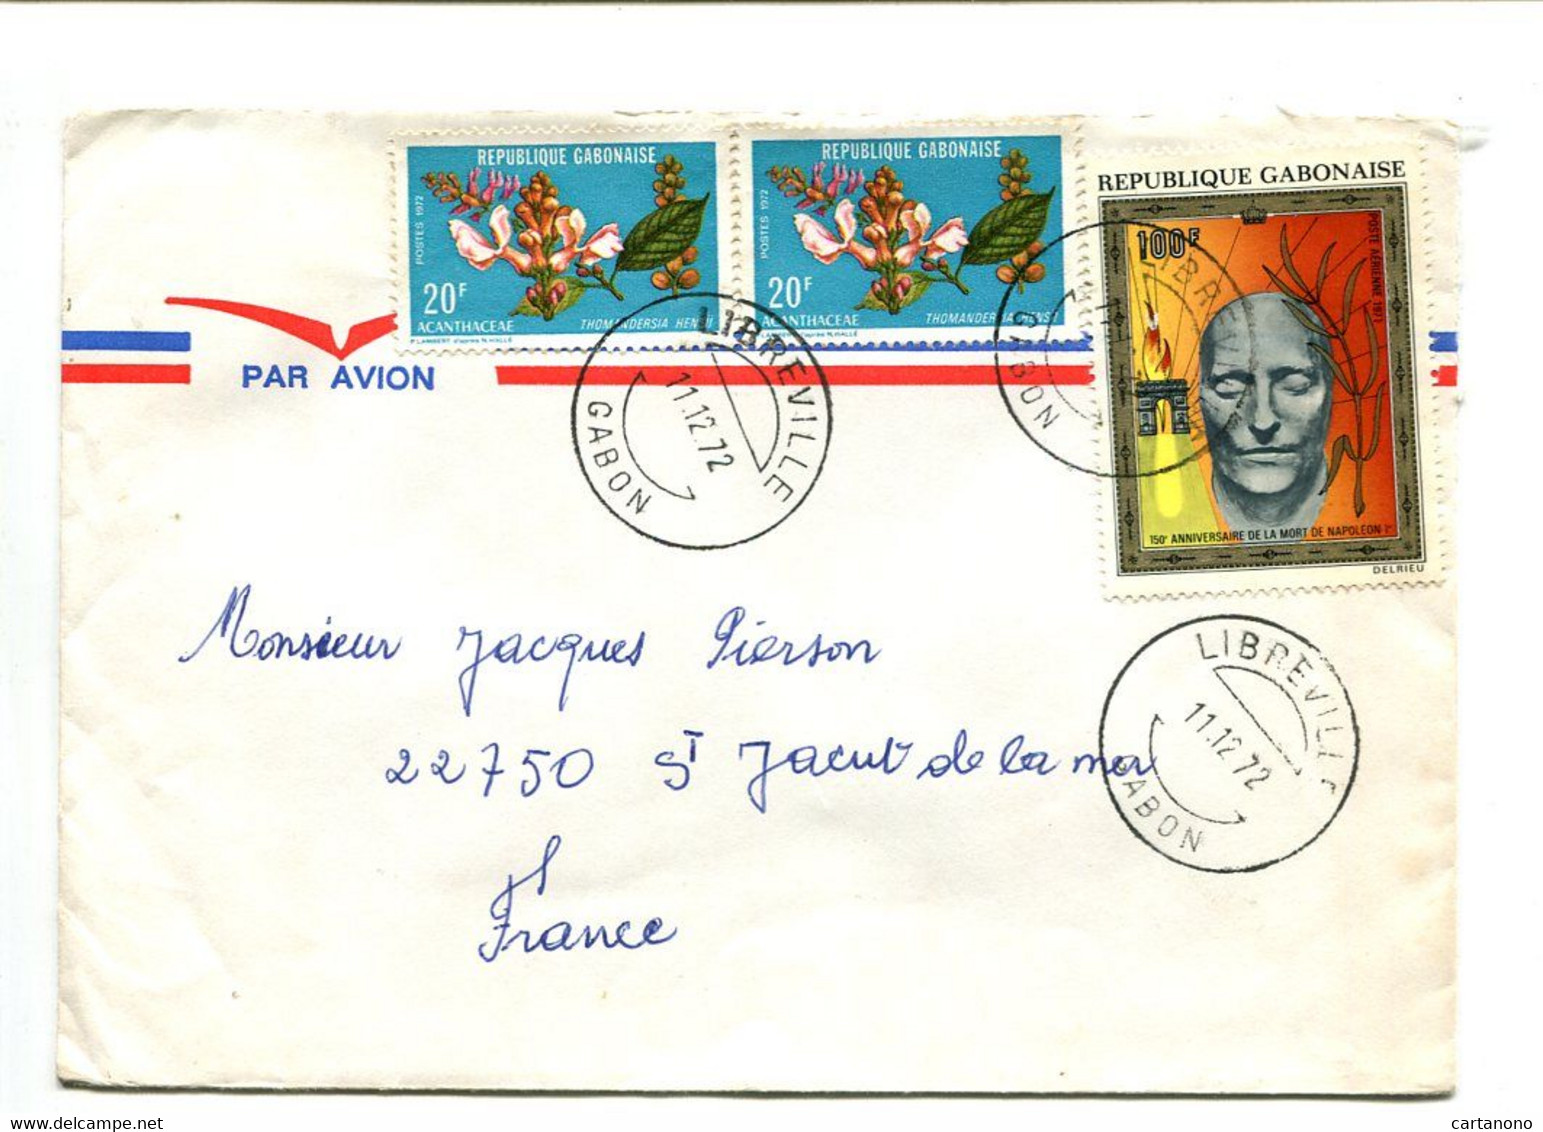 GABON Libreville 1972 - Affranchissement Sur Lettre Par Avion - Napoléon / Fleurs - Napoleon